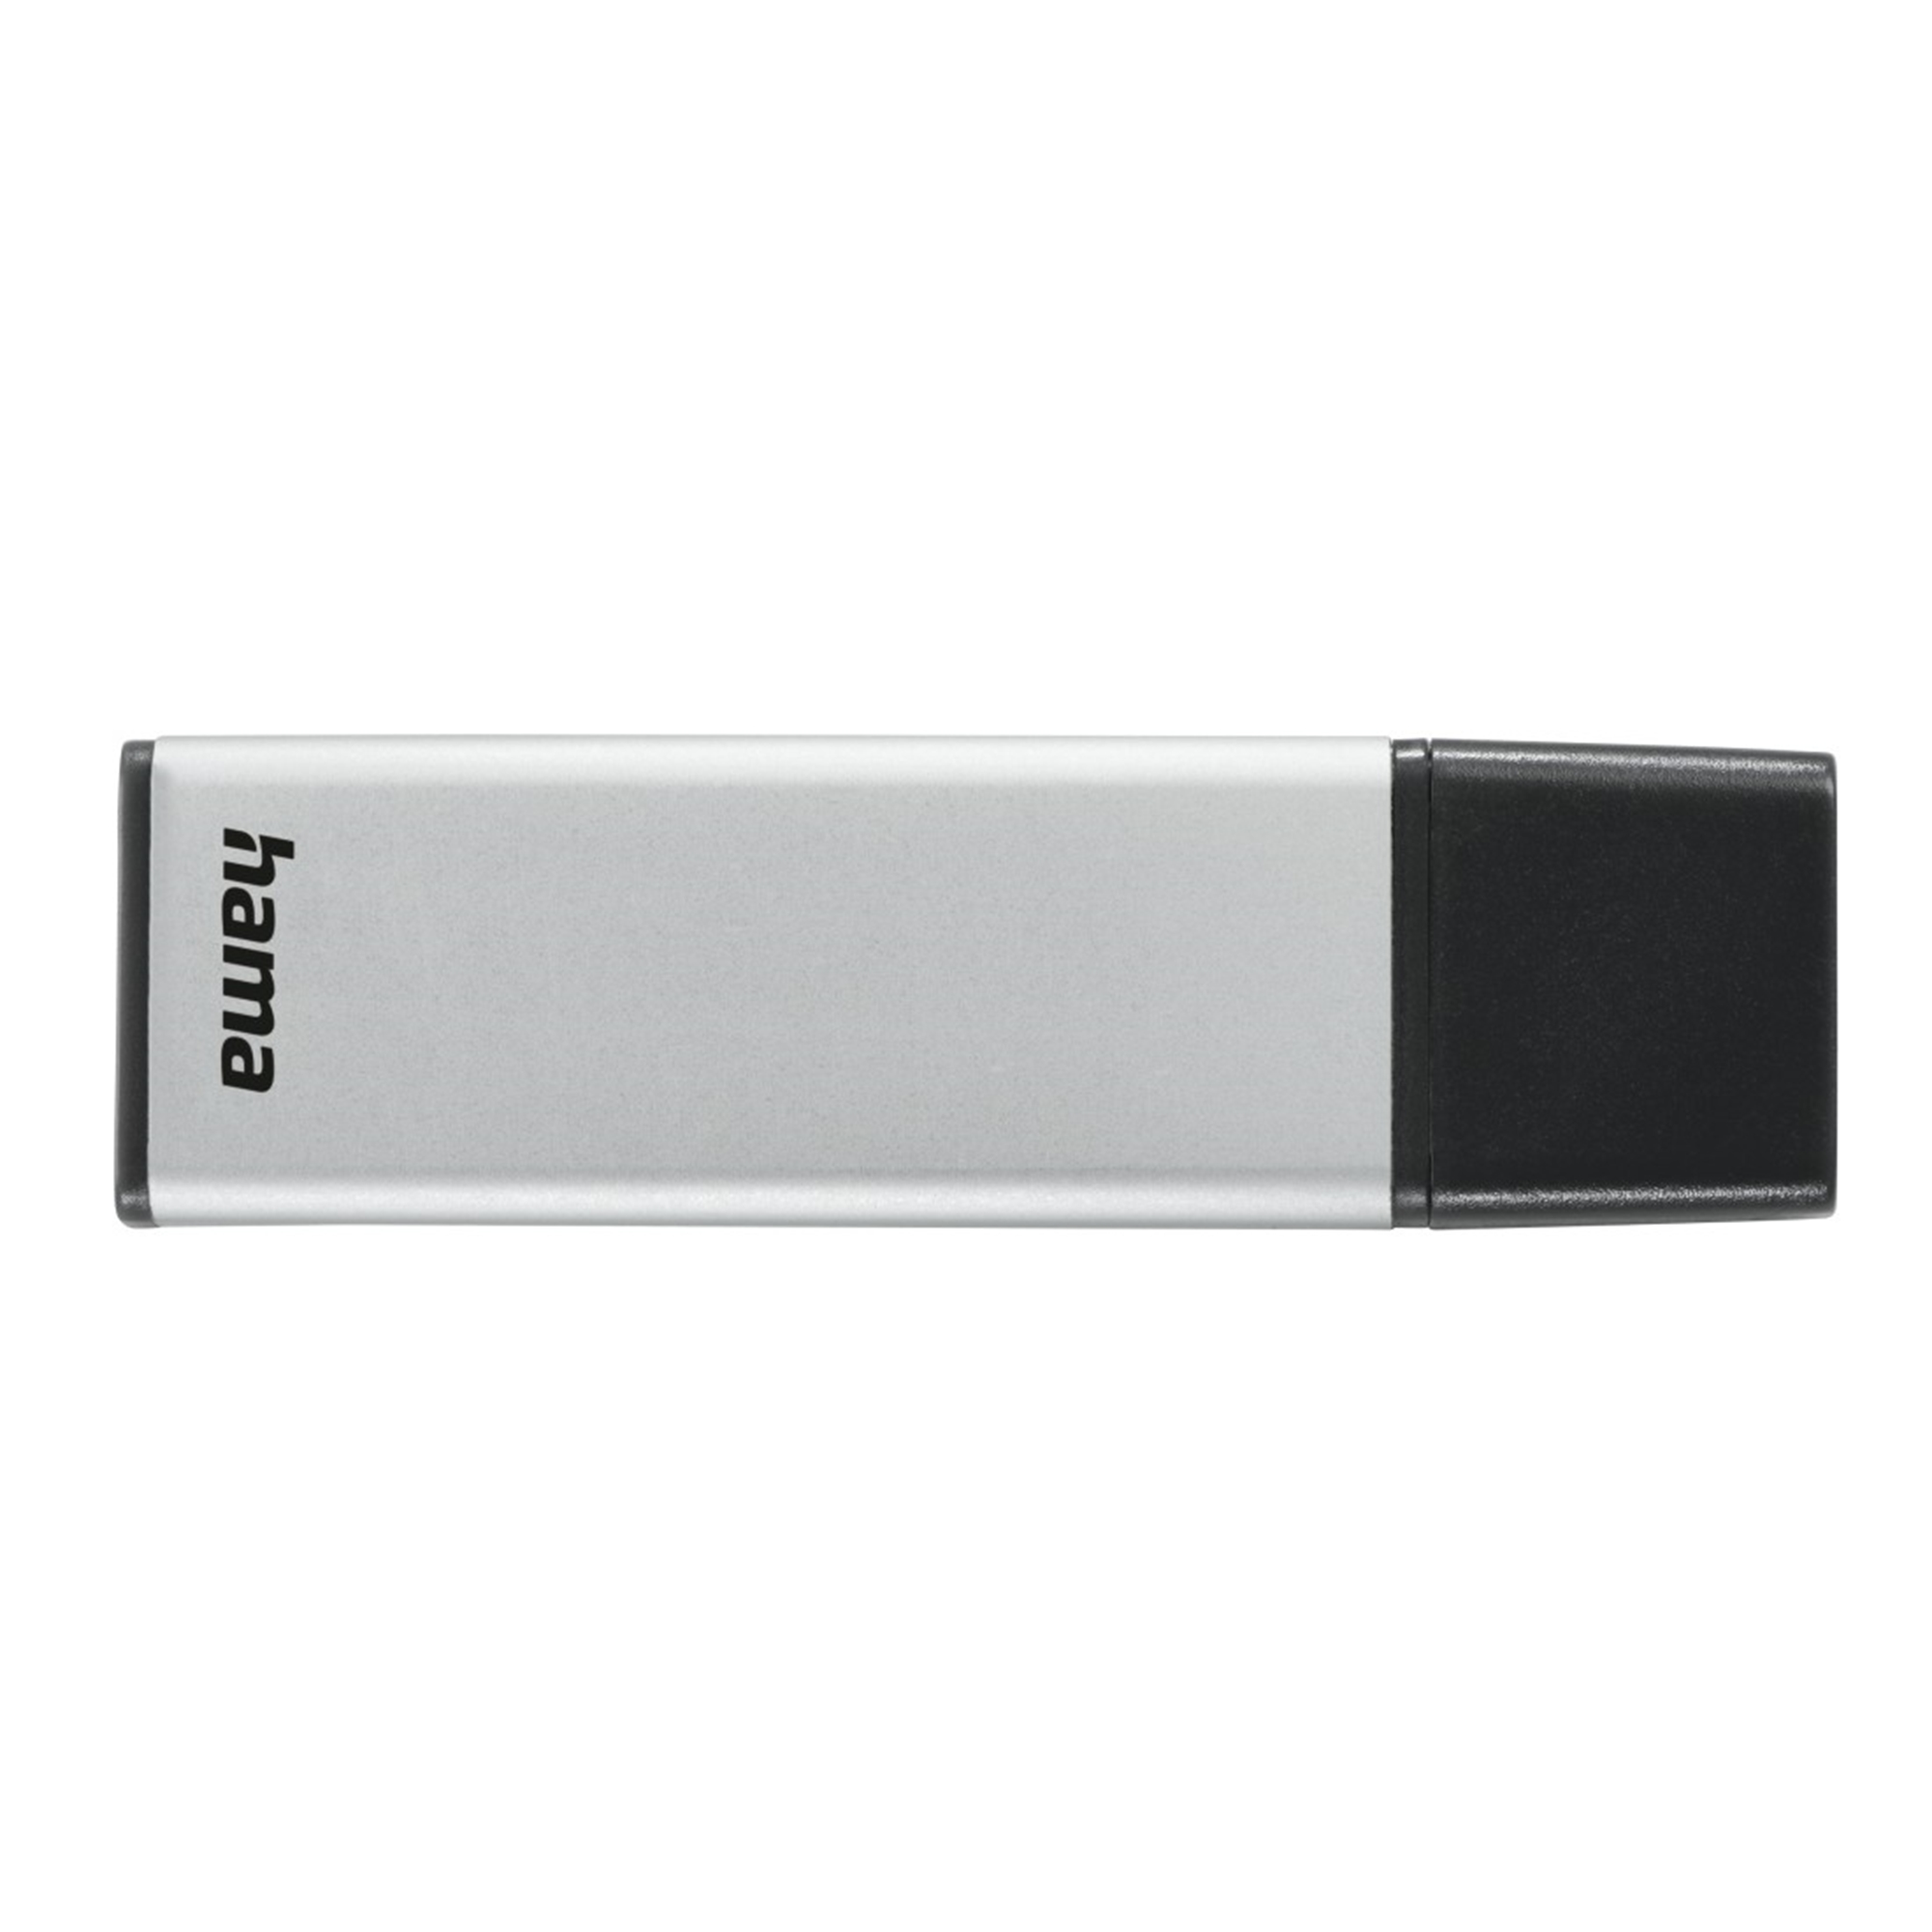 GB) GB 256 USB-Stick 256 (Silber, Classic HAMA